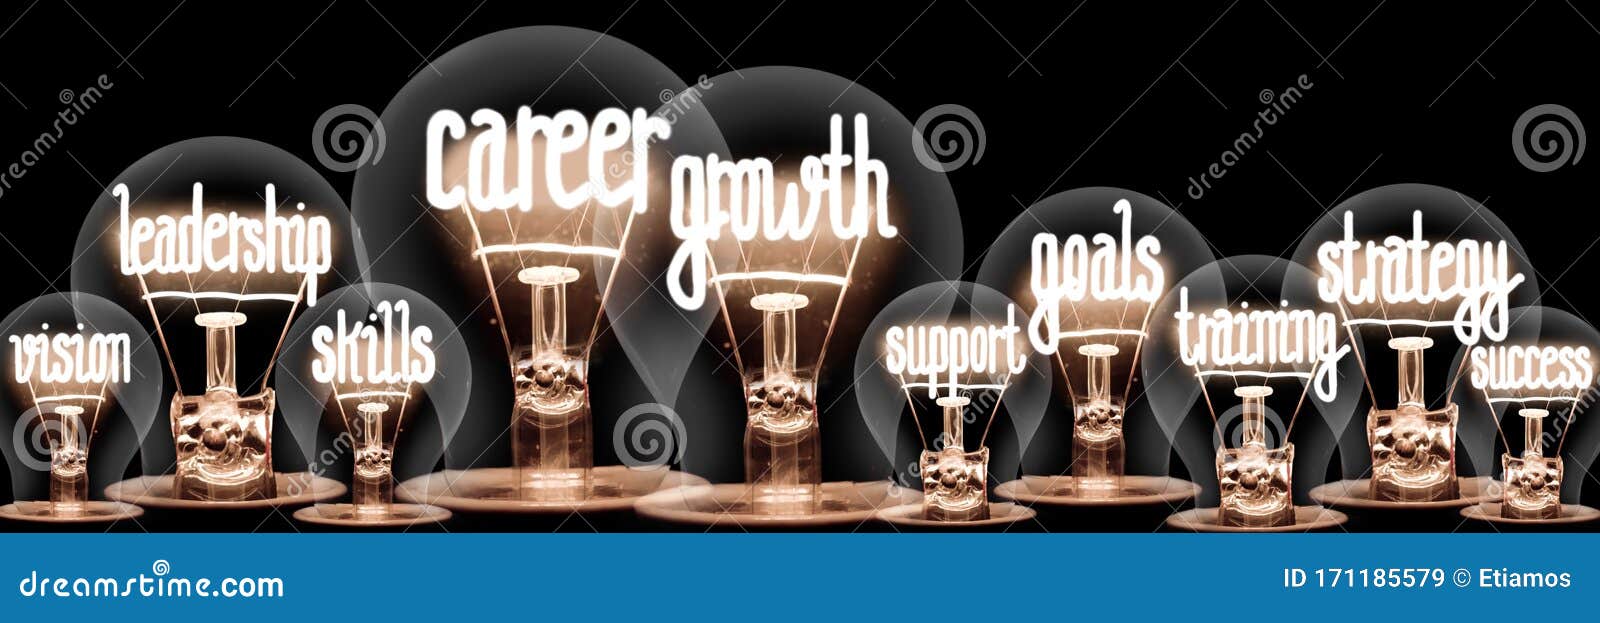 light bulbs with career growth concept